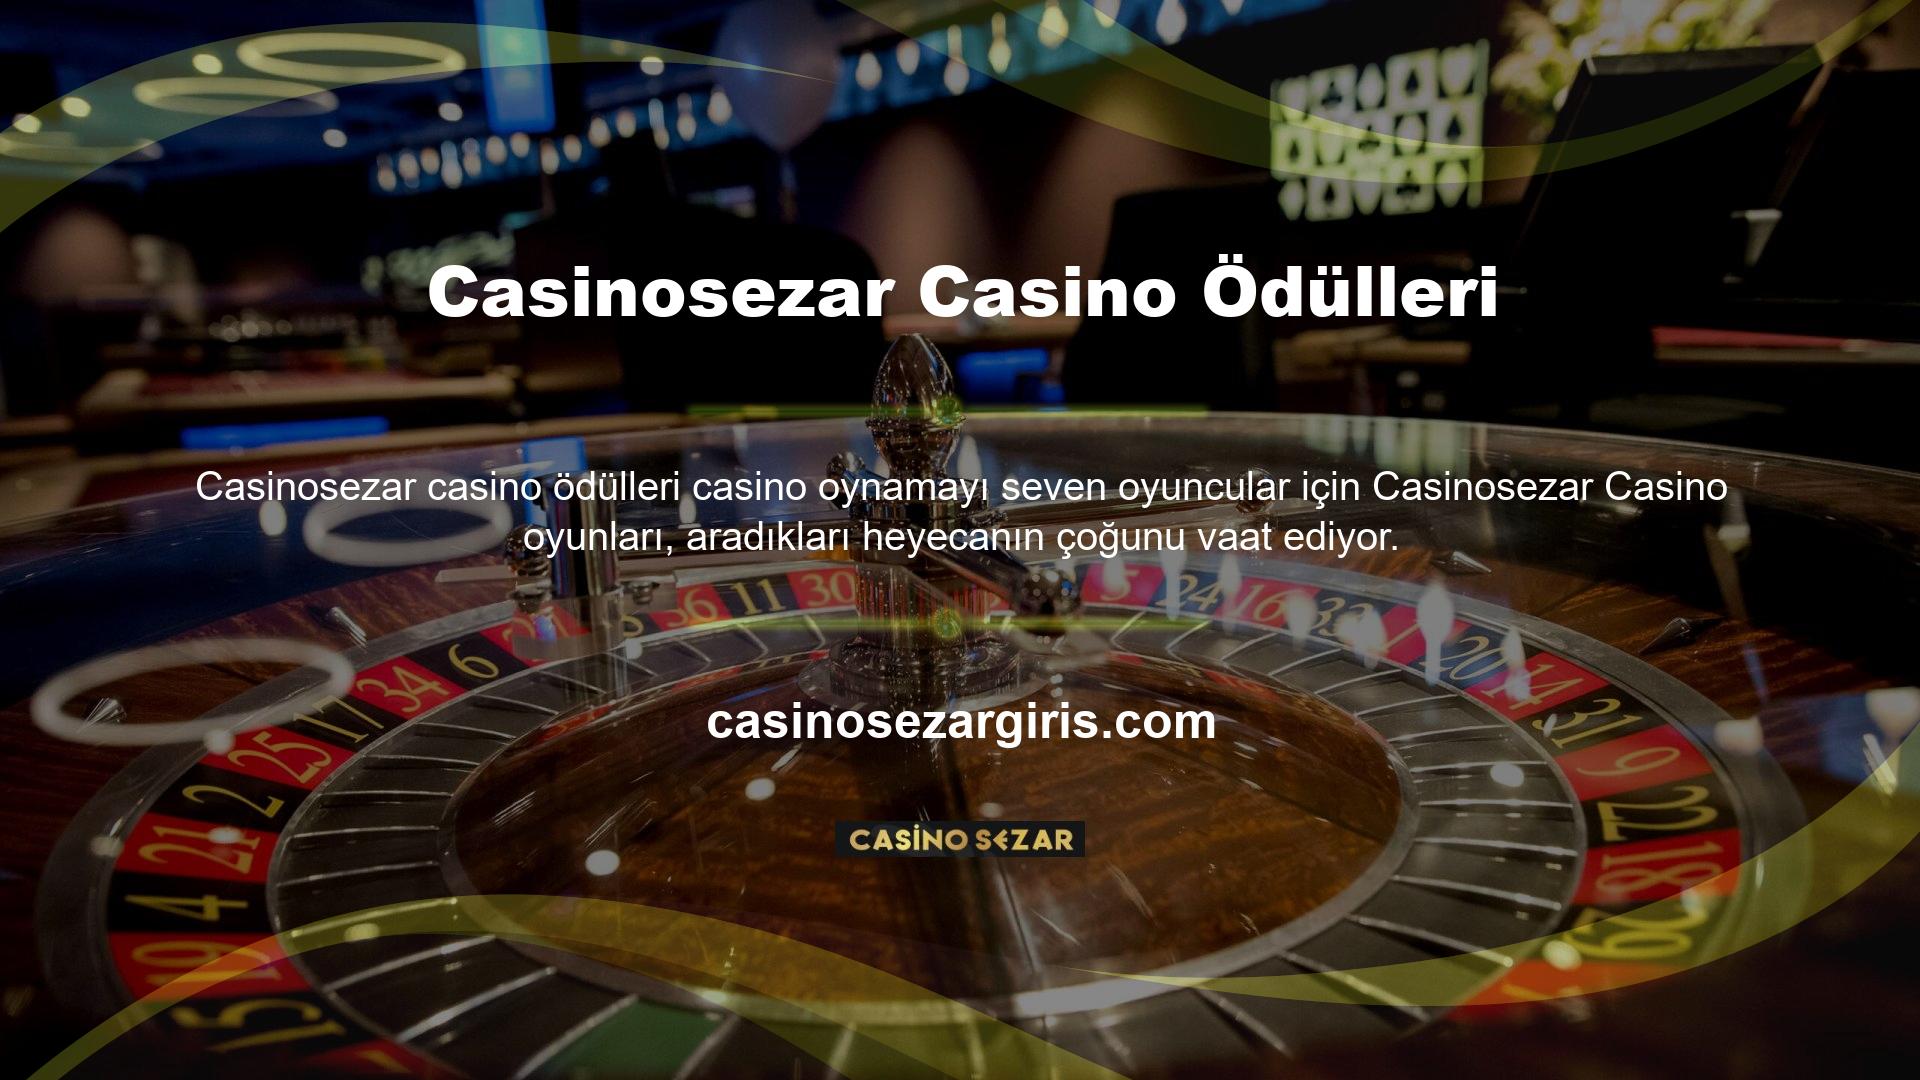 Menü aniden Las Vegas'ta olduğunuzu hissettiriyor ve casino mekanının tasarımı oldukça aşırı